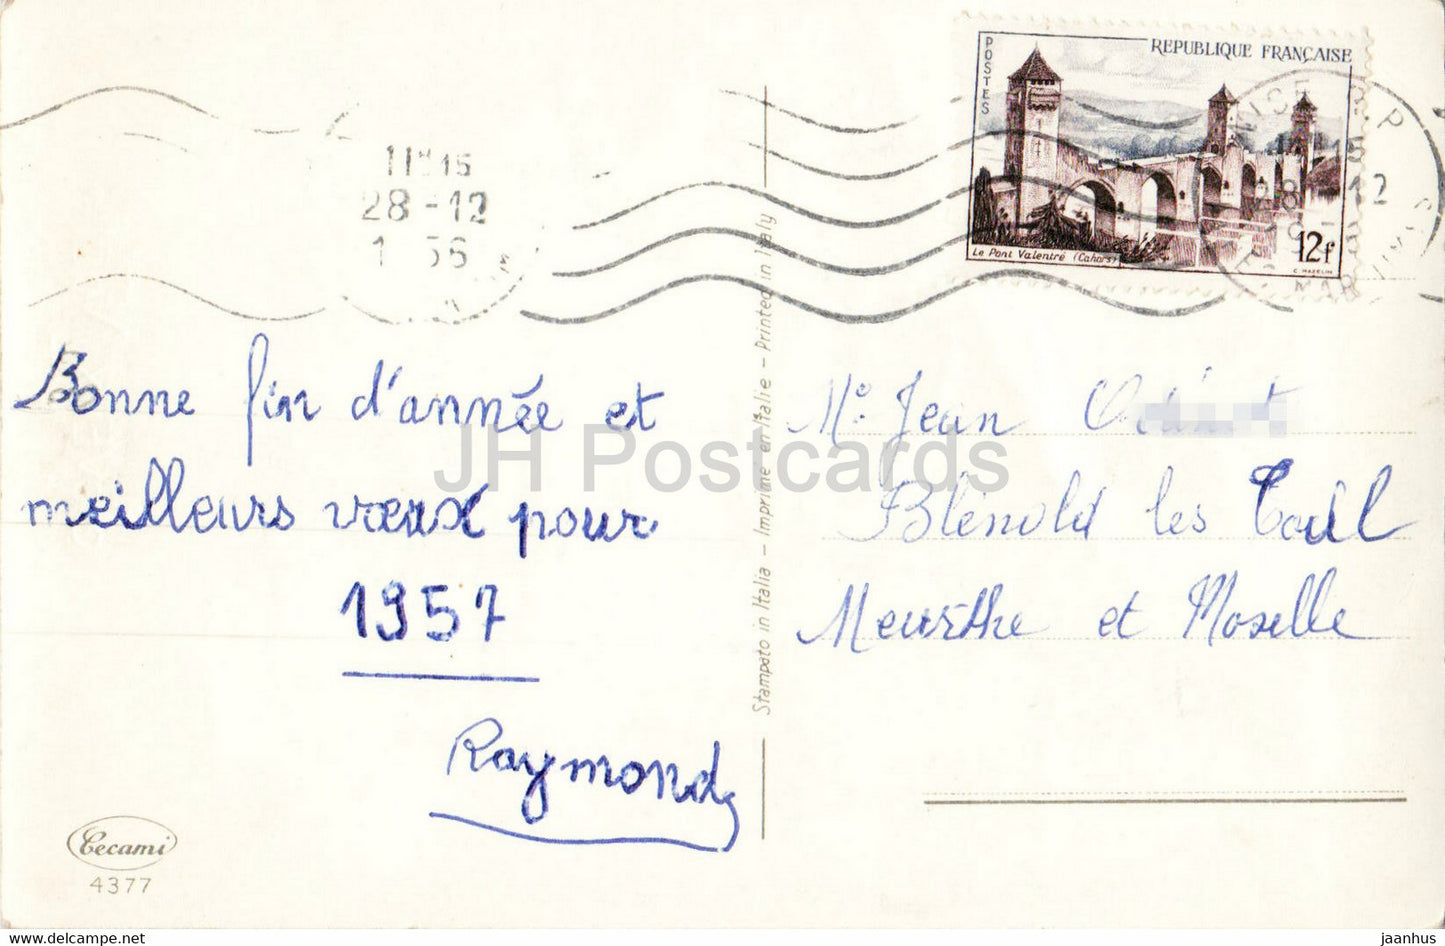 Neujahrsgrußkarte – Joyeux Noel – Glocken – Illustration – Cecami 4377 – alte Postkarte – 1956 – Frankreich – gebraucht